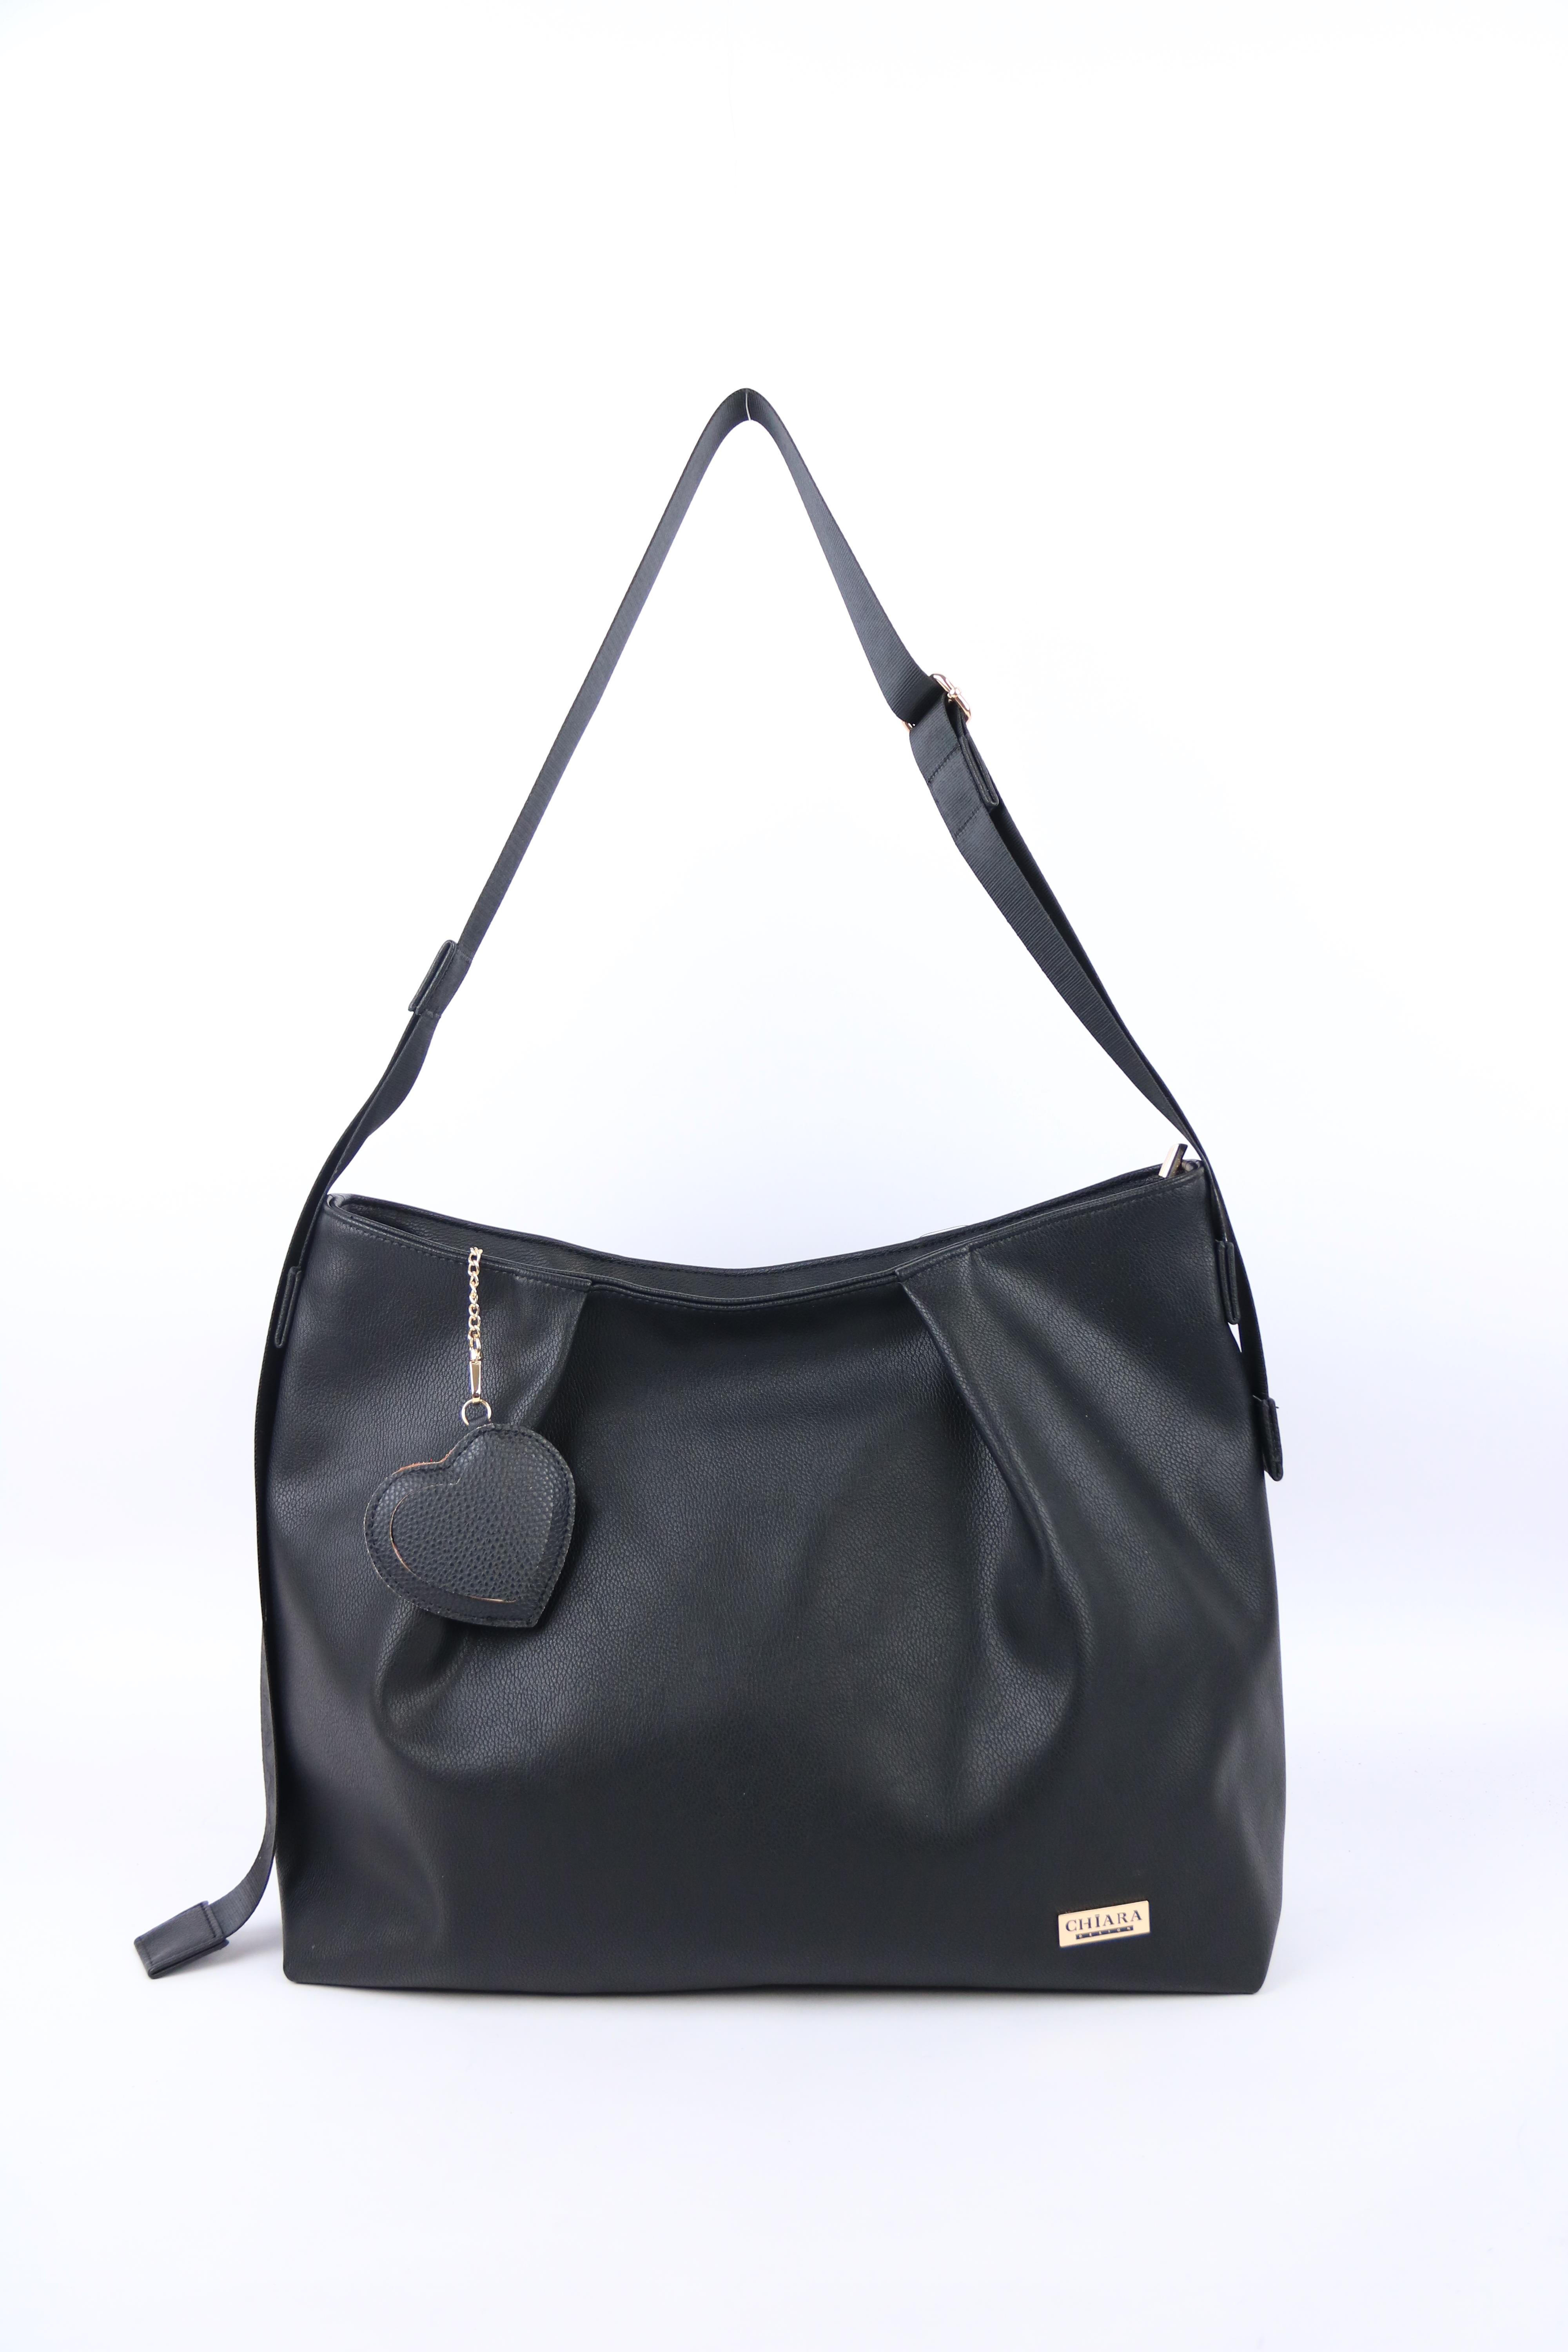 Chiara Woman's Bag K782